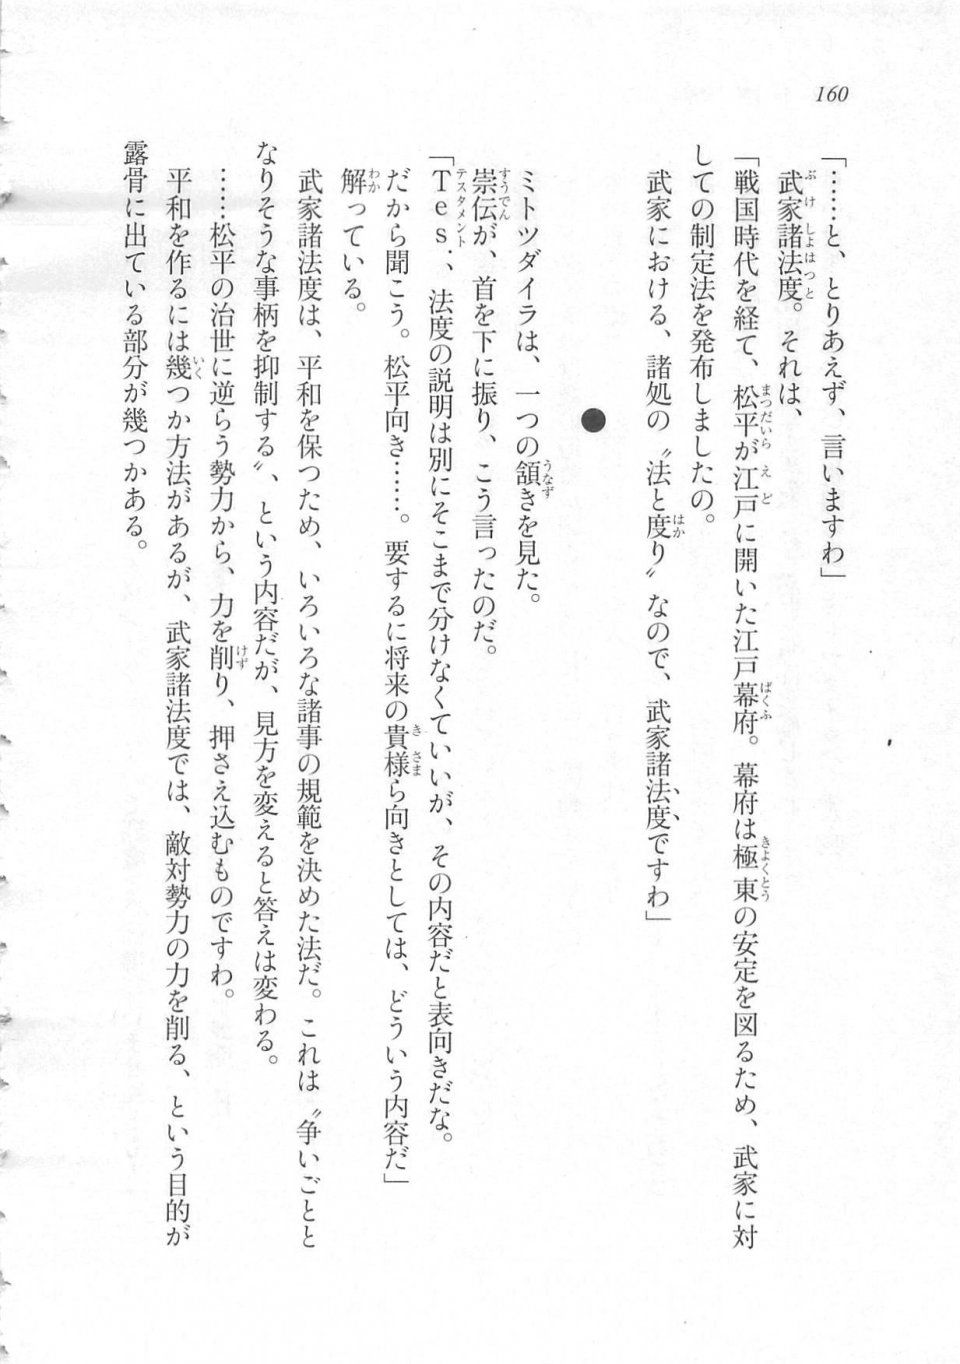 Kyoukai Senjou no Horizon LN Sidestory Vol 3 - Photo #164